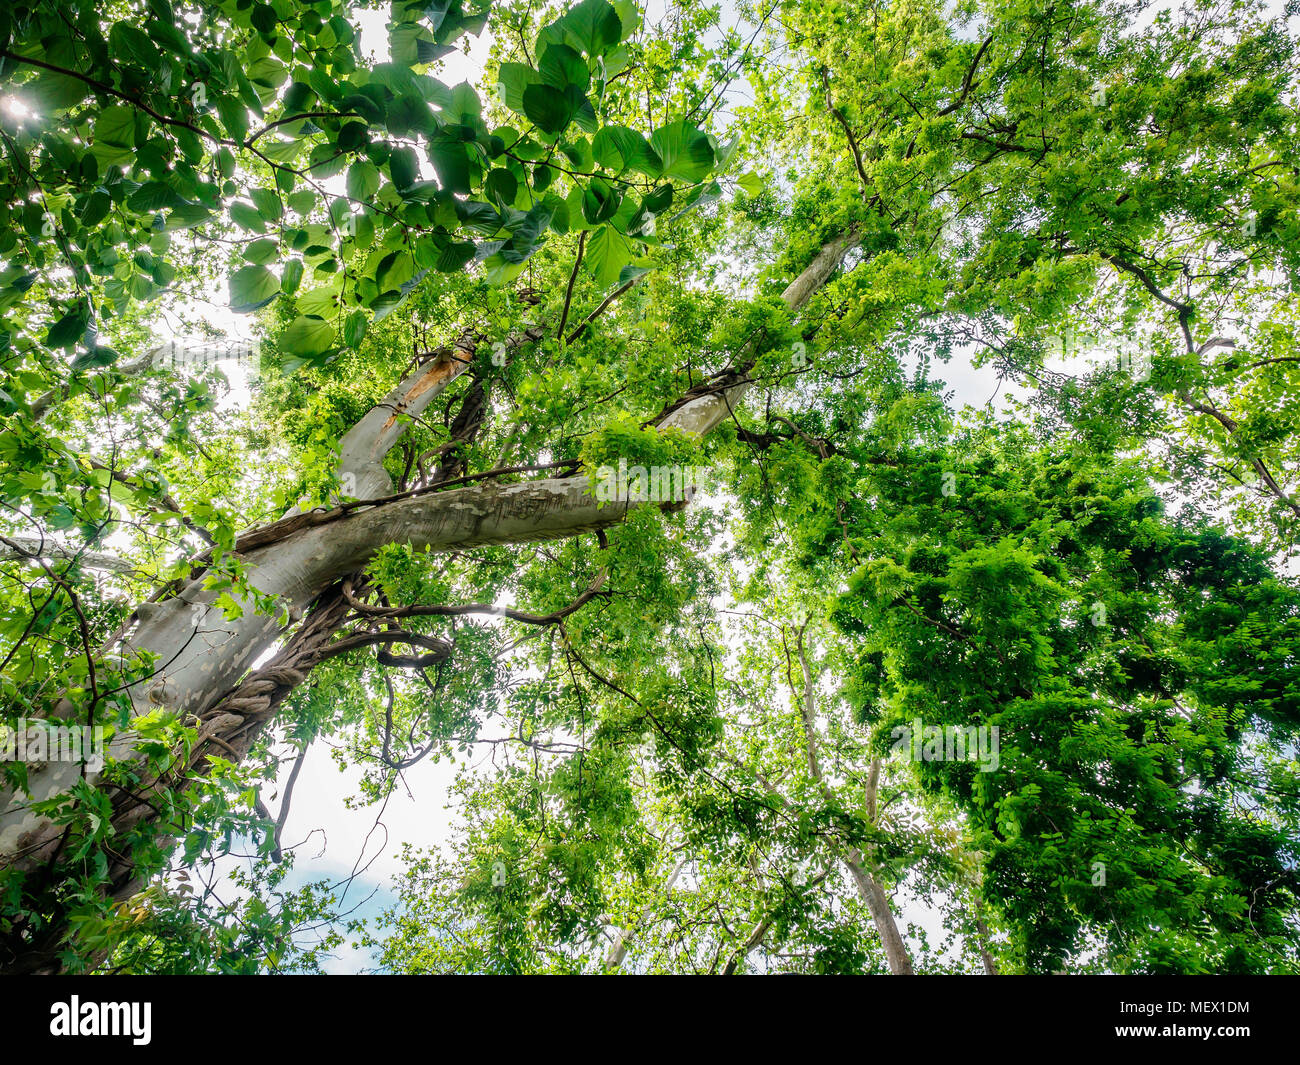 Ansicht von unten an den Baum oben auf einer riesigen Platane Platanus im Dschungel oder Wald. Sonnenstrahlen in der Baumkrone. Natur Hintergrund Stockfoto